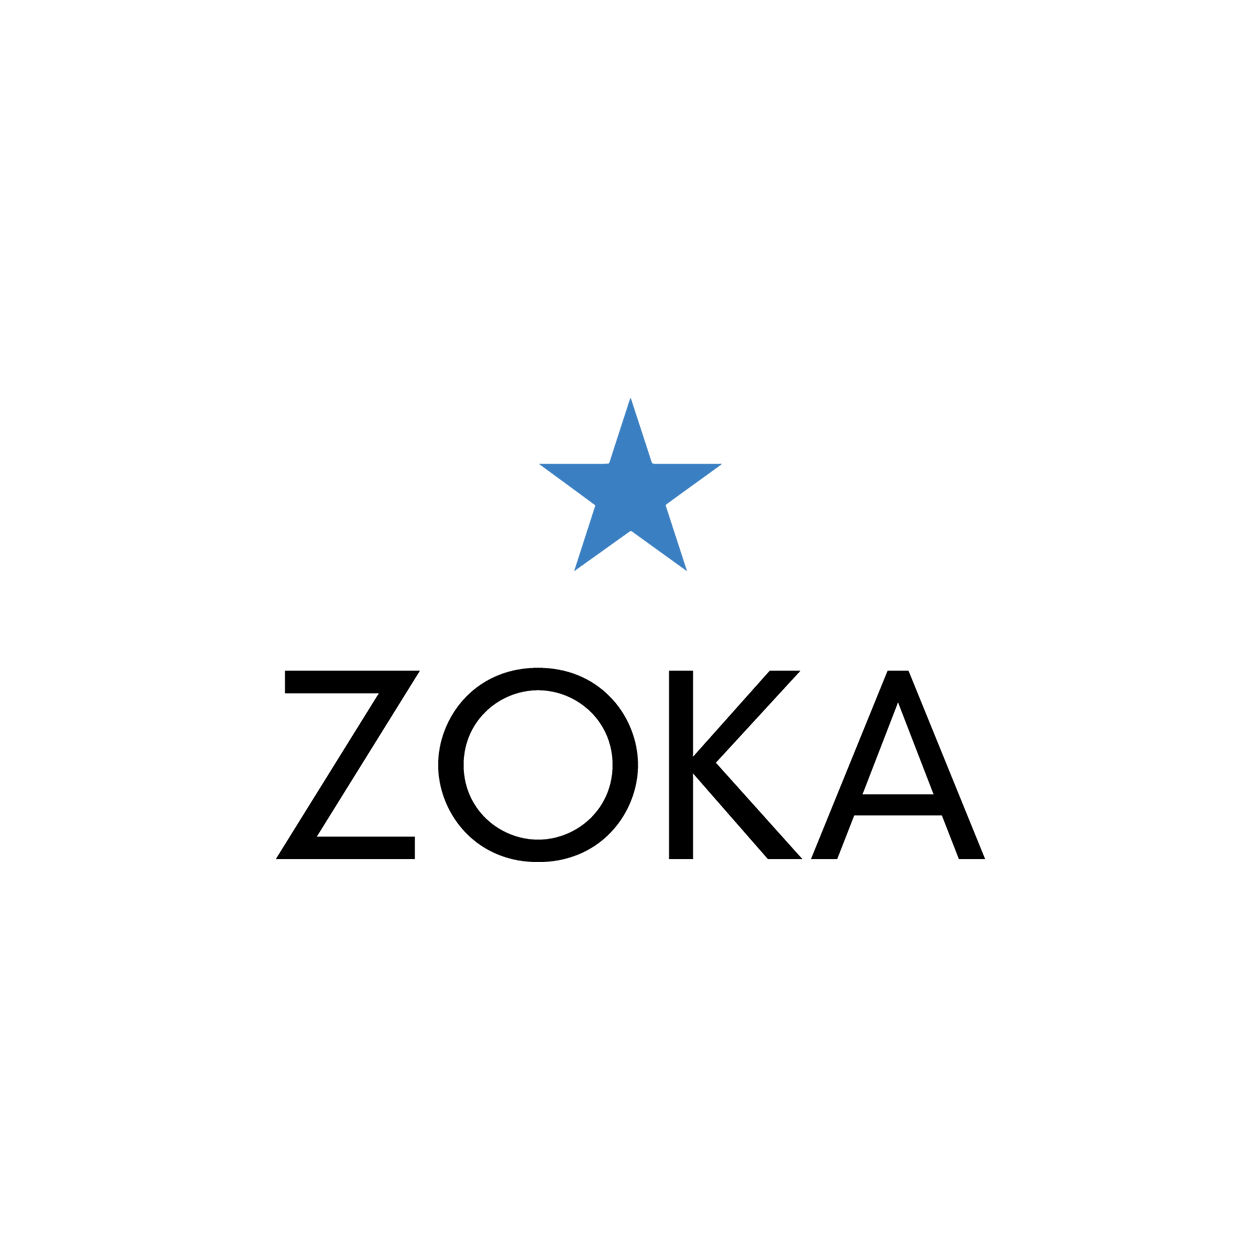 Zoka